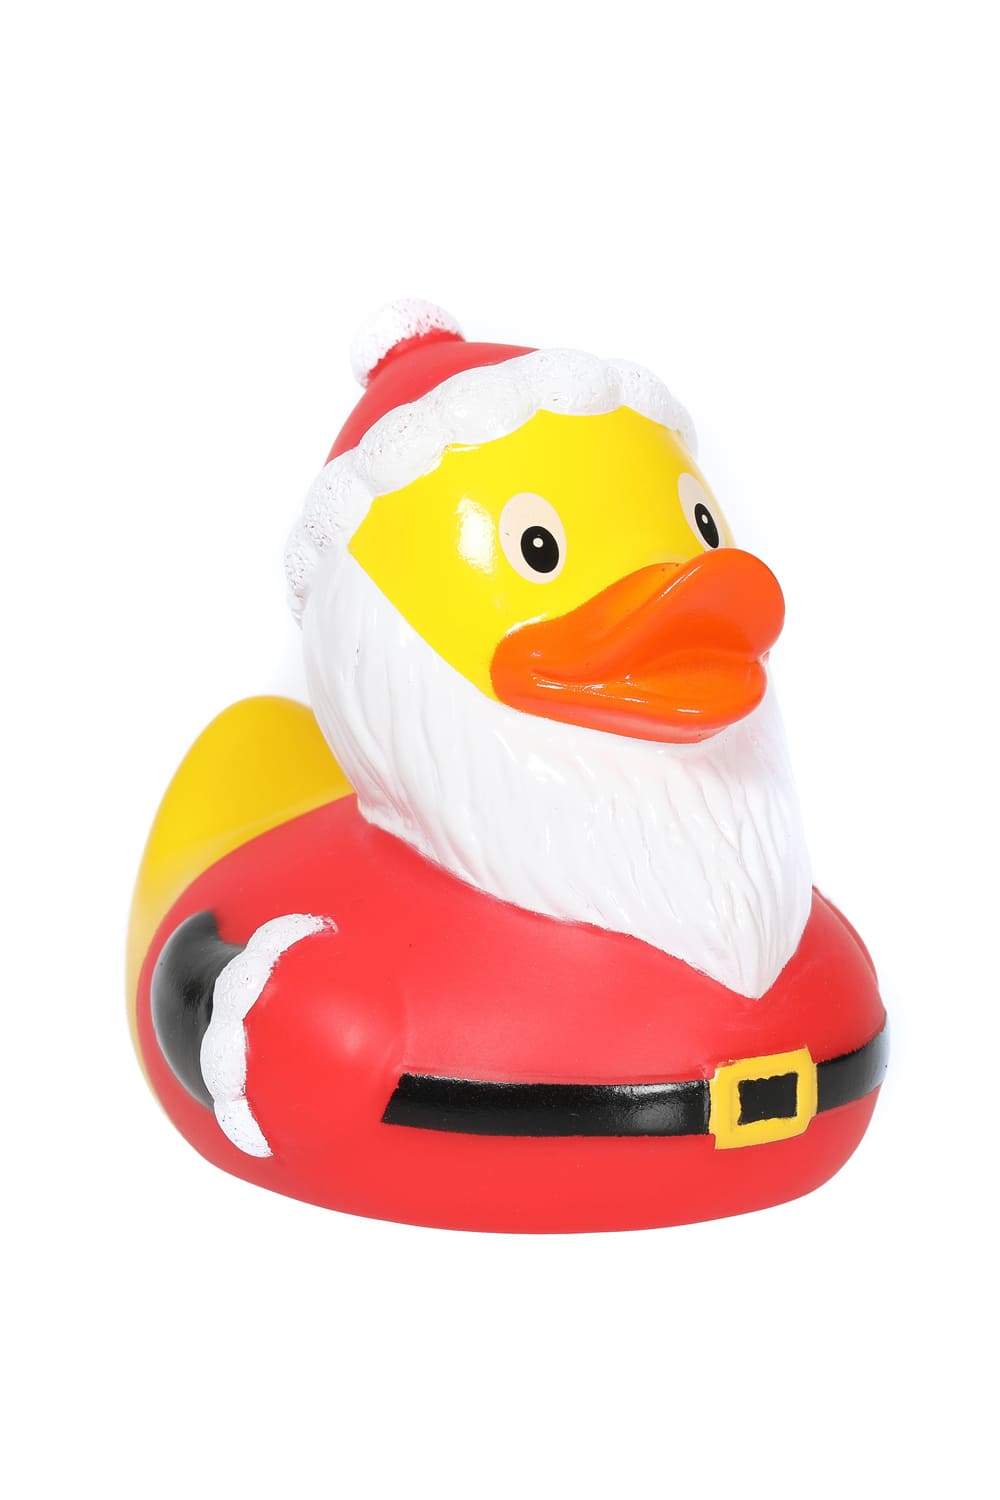 Diese Badeente trägt ihr Entenkleid im Weihnachtsmann Look. Die süsse Badeente hat eine Standartgrösse von 8 cm. Ein perfektes Weihnachtsgeschenk oder Mitbringsel für die Adventszeit. Auch perfekt zum Befüllen des Adventskalenders. 